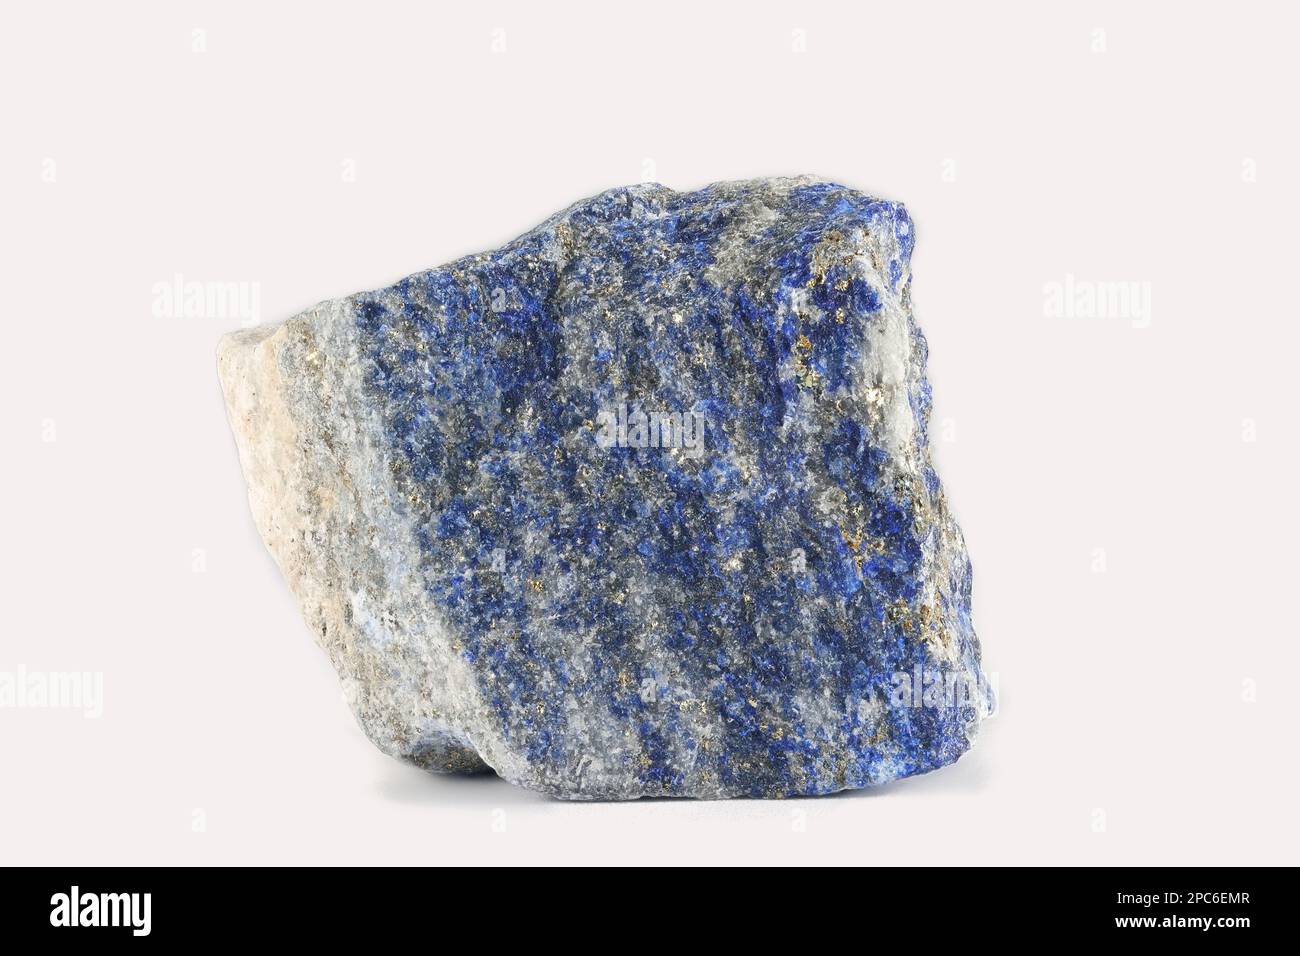 El lapislázuli, o lapislázuli, es una roca metamórfica azul profundo utilizada como piedra semipreciosa Foto de stock